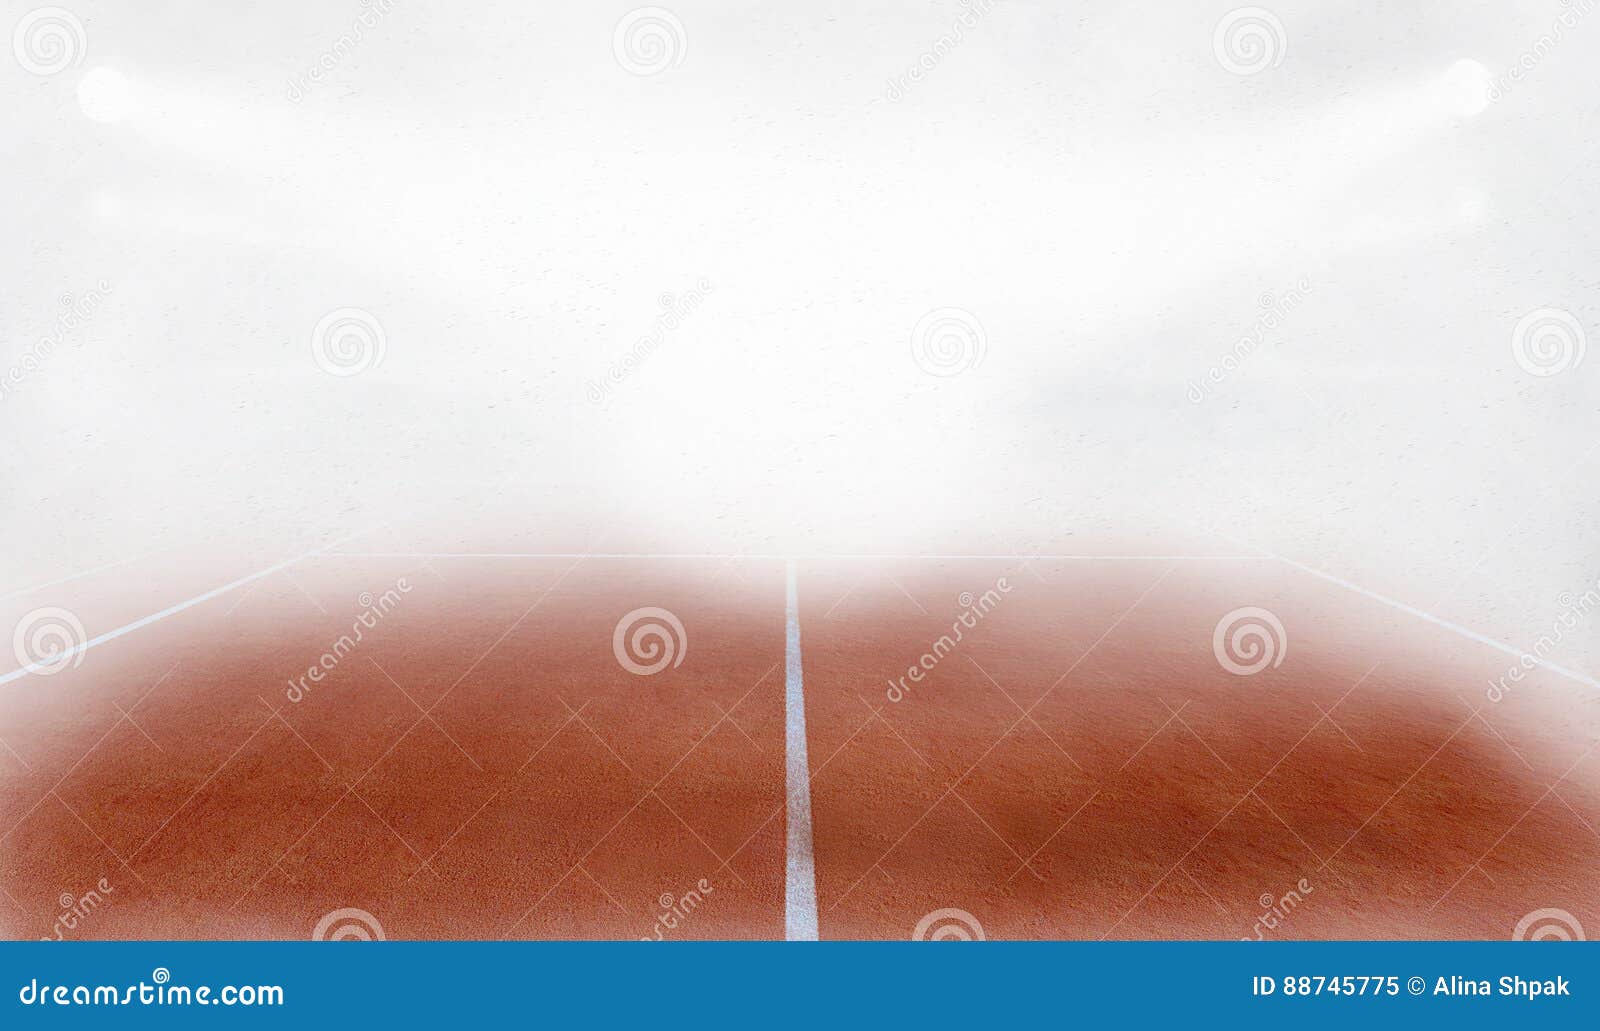 tenis ground court in fog 3d render